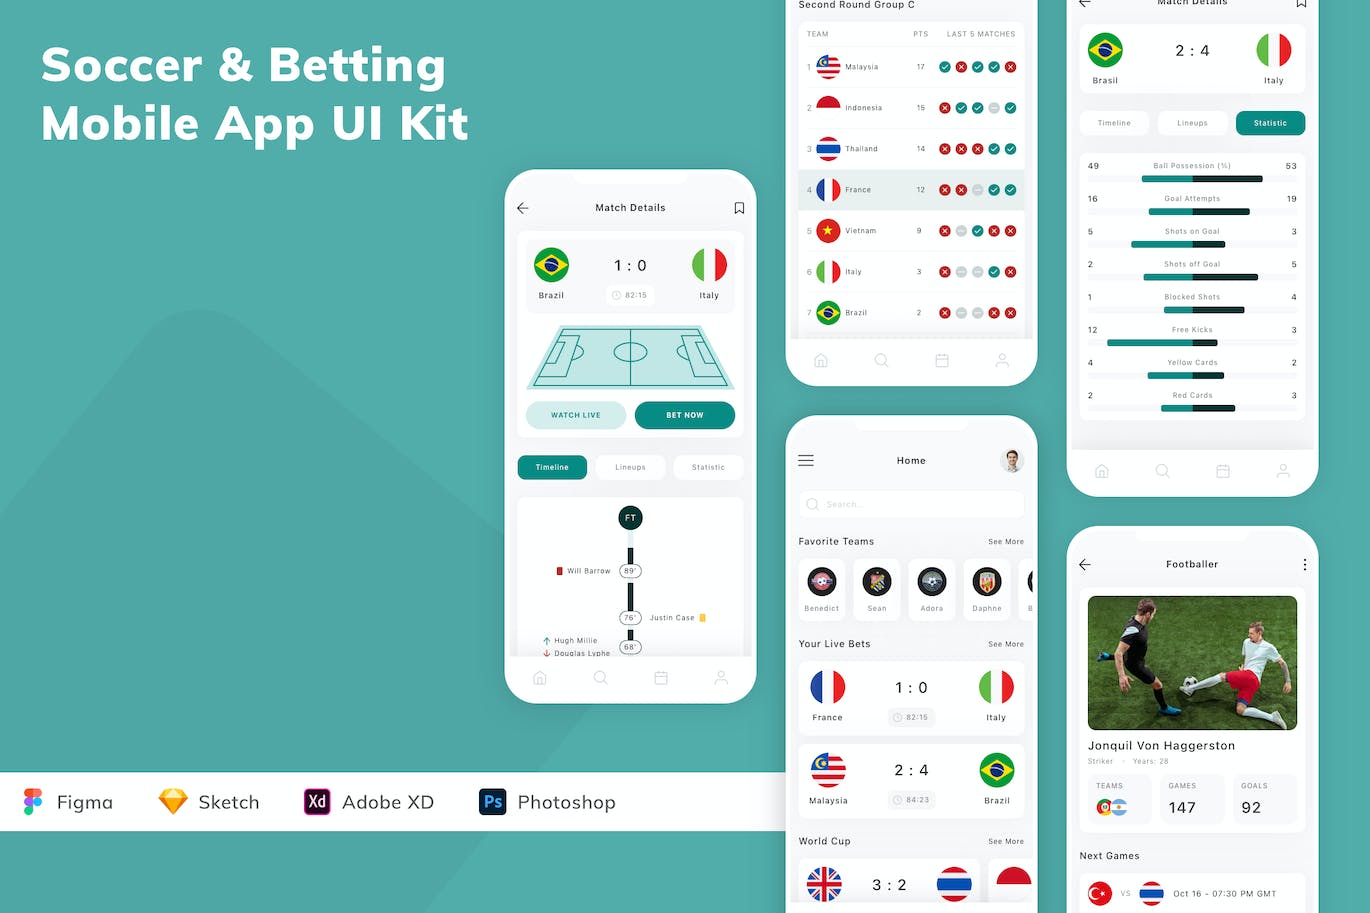 足球体育App应用程序UI设计模板套件 Soccer & Betting Mobile App UI Kit APP UI 第1张